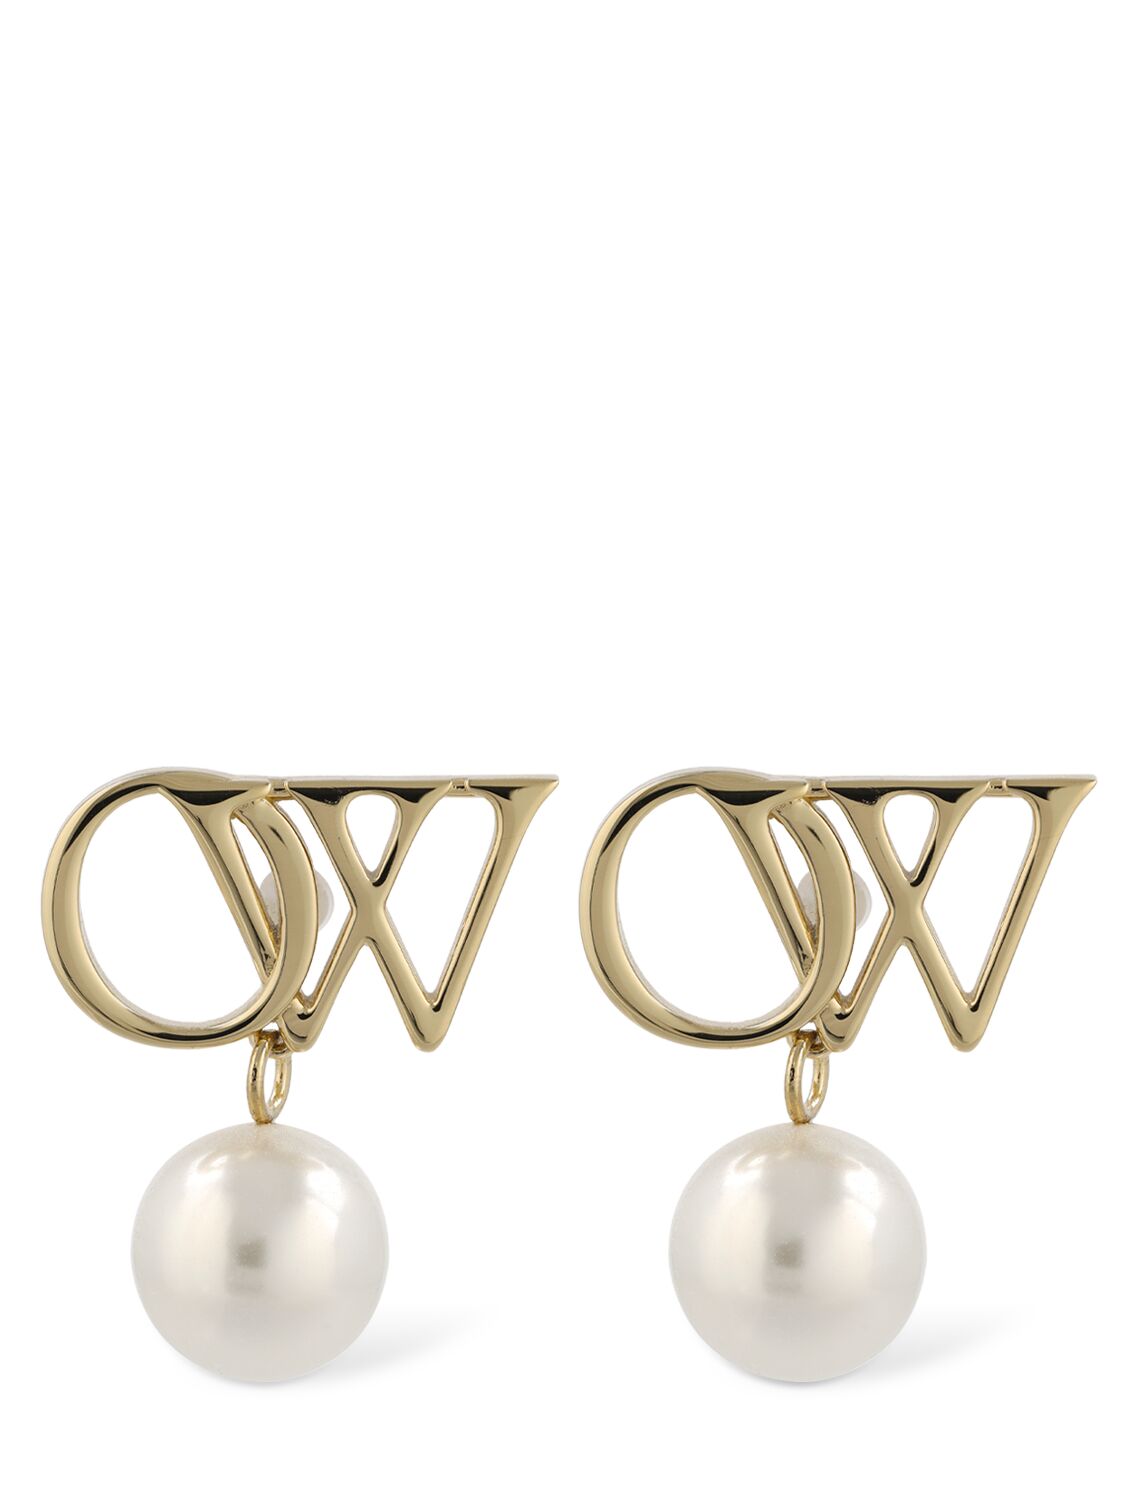 Ow Brass & Faux Pearl Earrings